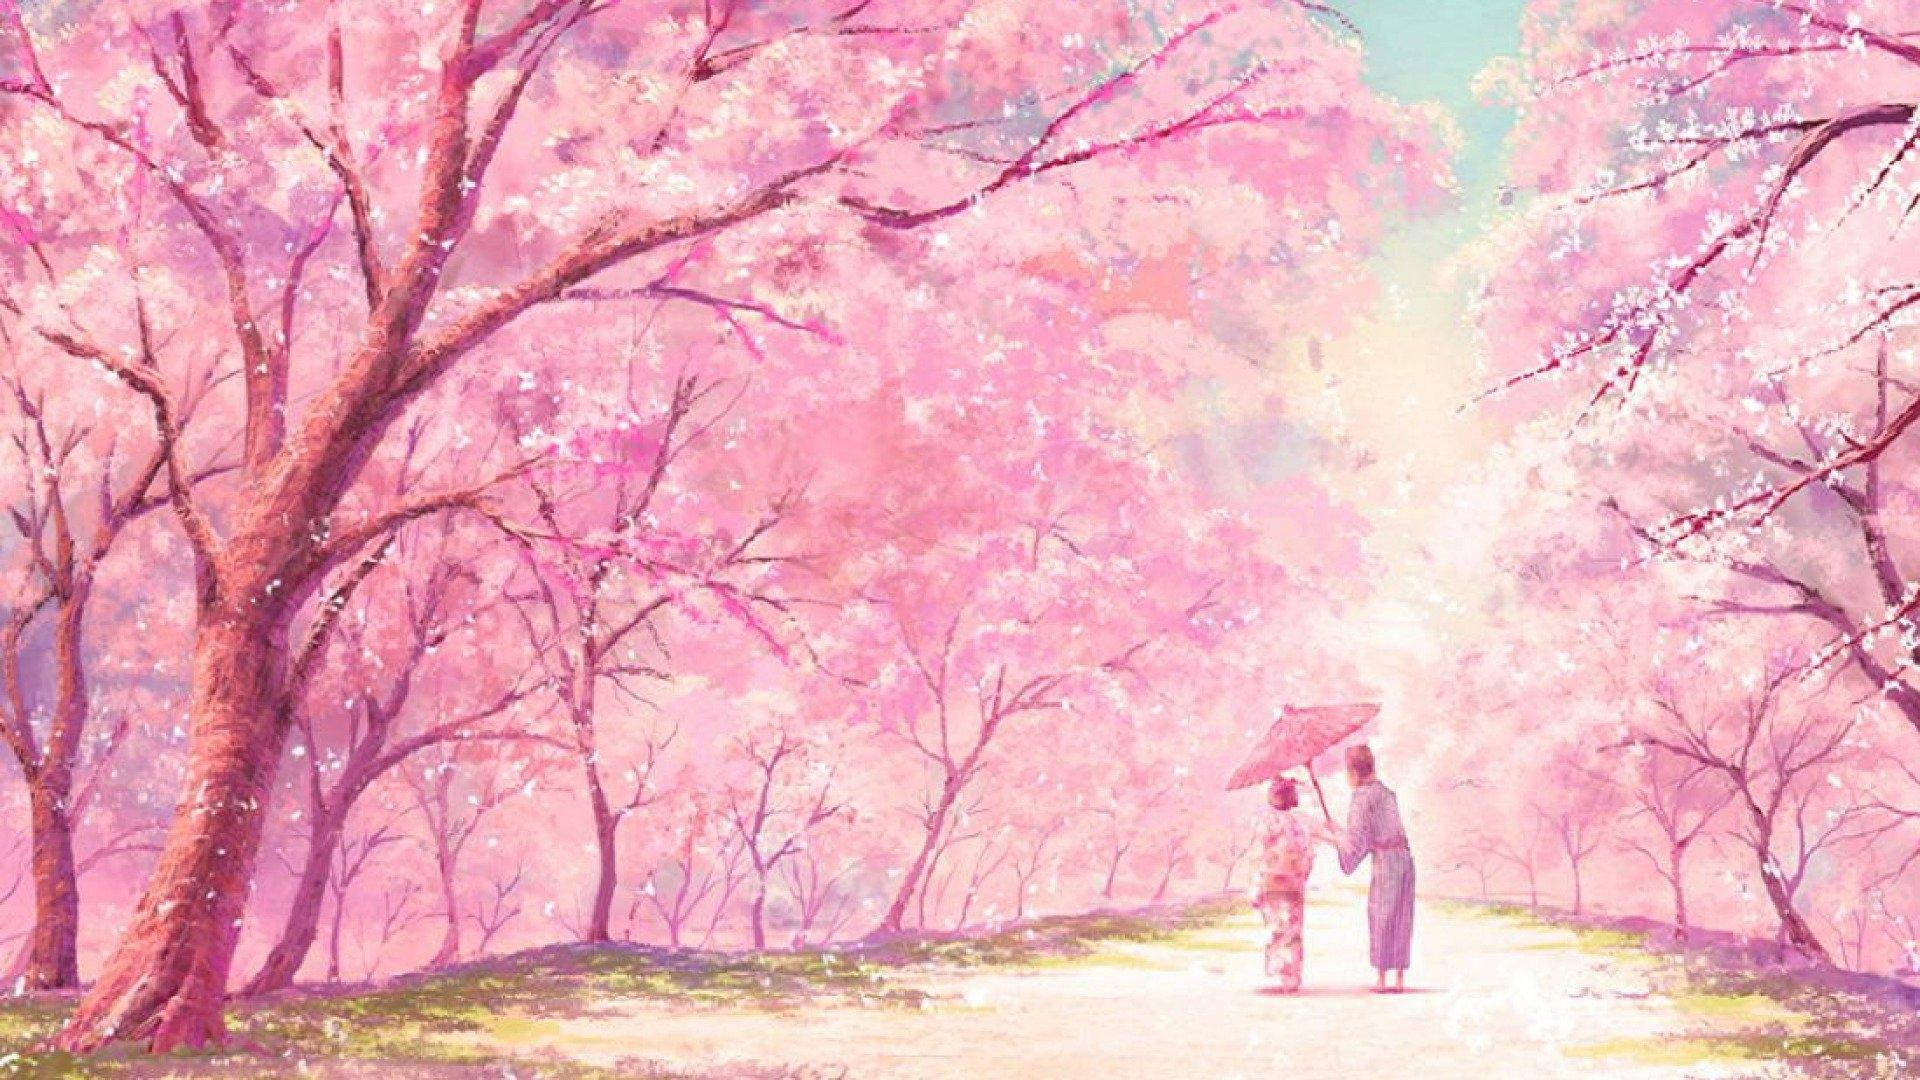  Baum Hintergrundbild 1920x1080. Downloaden Sanfterästhetischer Sakura Baum Wallpaper